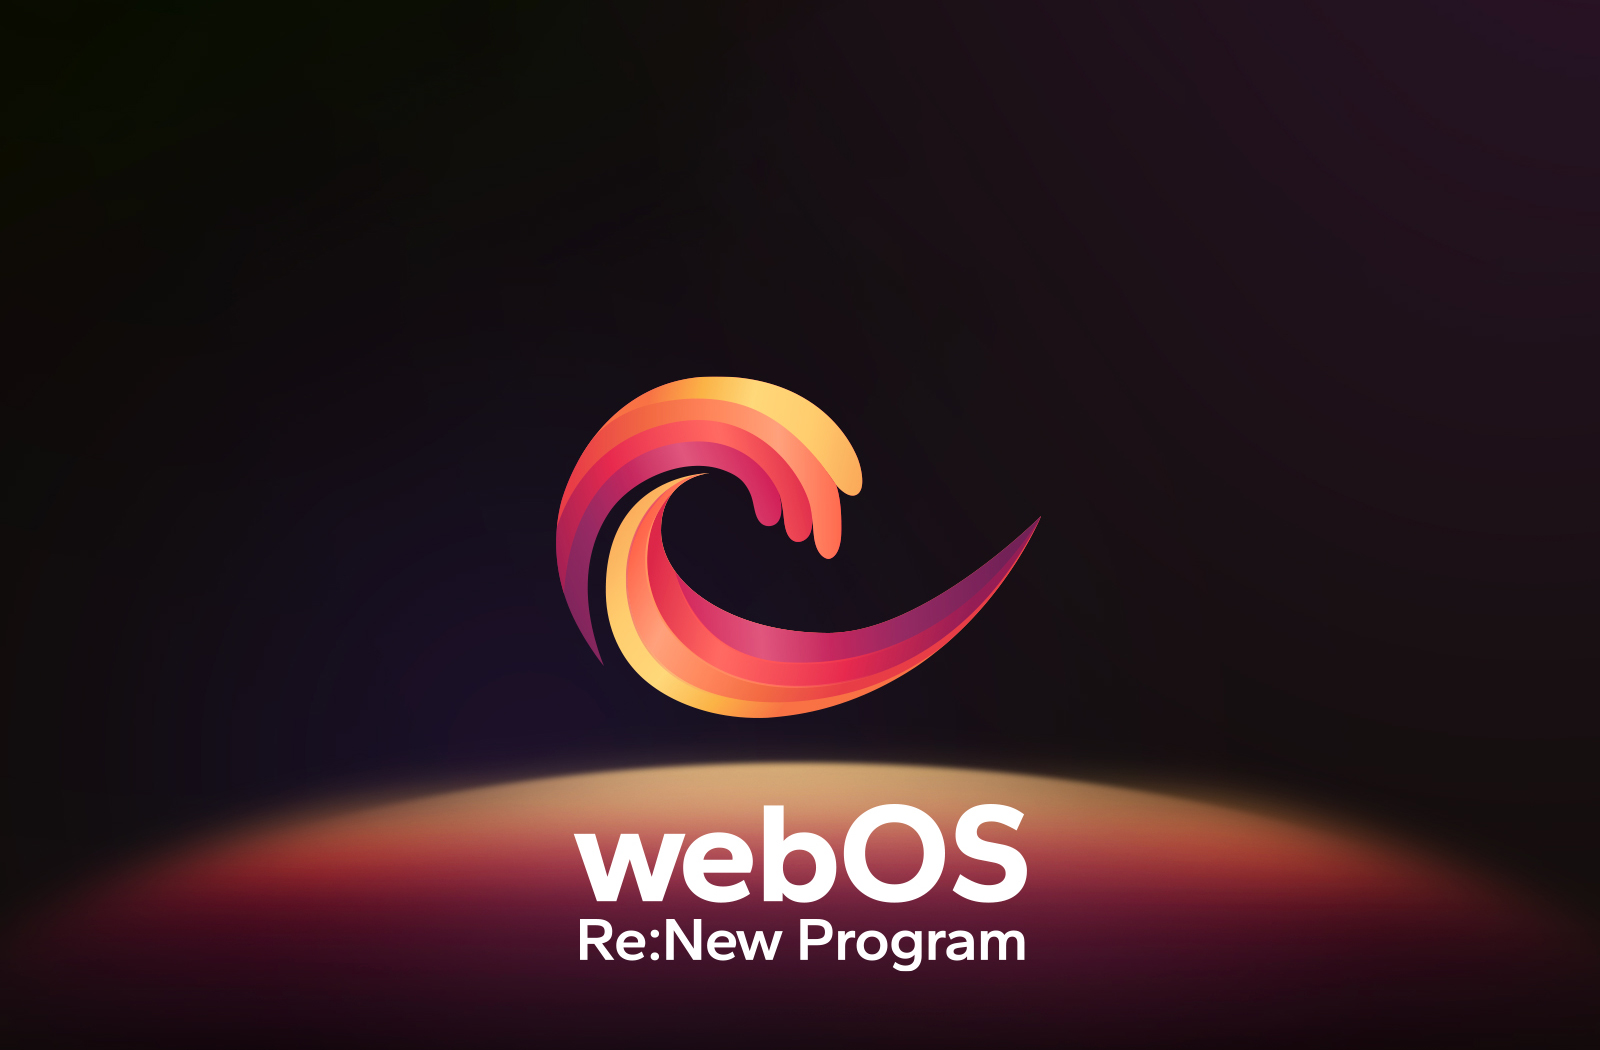 Qora fonda markazda joylashgan webOS logotipi va pastdagi boʻsh joy qizil, toʻq sariq va sariq logotip ranglari bilan yoritilgan. Logotip ostida "webOS Re:New Program" so‘zlari mavjud.